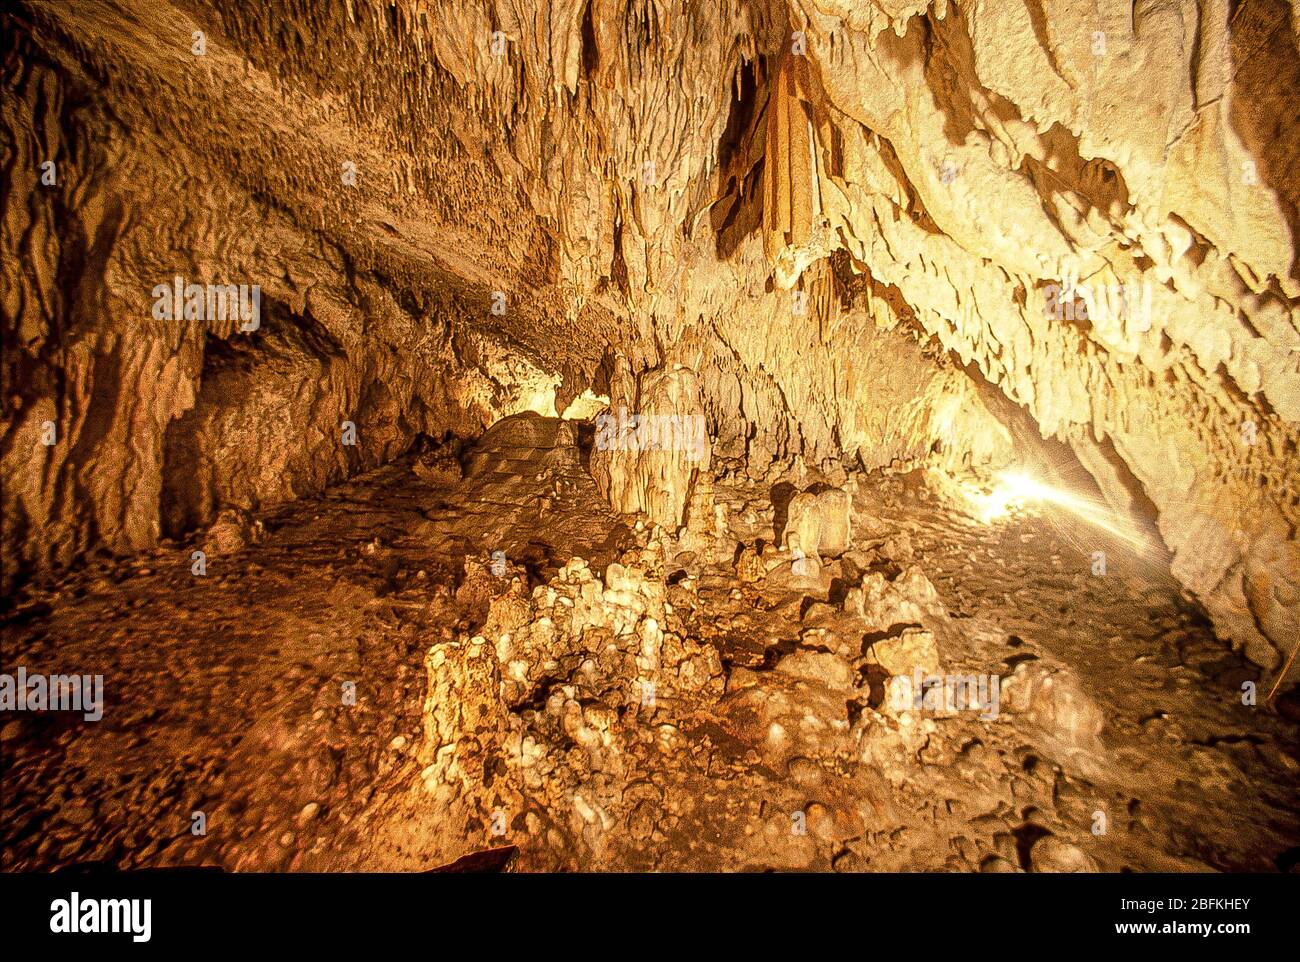 Italia calabria - Papasidero CS - Grotta del Romito. La grotta di Romito risale al Paleolitico superiore ed è a 16 km da Papasidero. La grotta Romito è composta da due stanze di circa 20 m ciascuna, e copre 34 m nel rifugio. Foto Stock